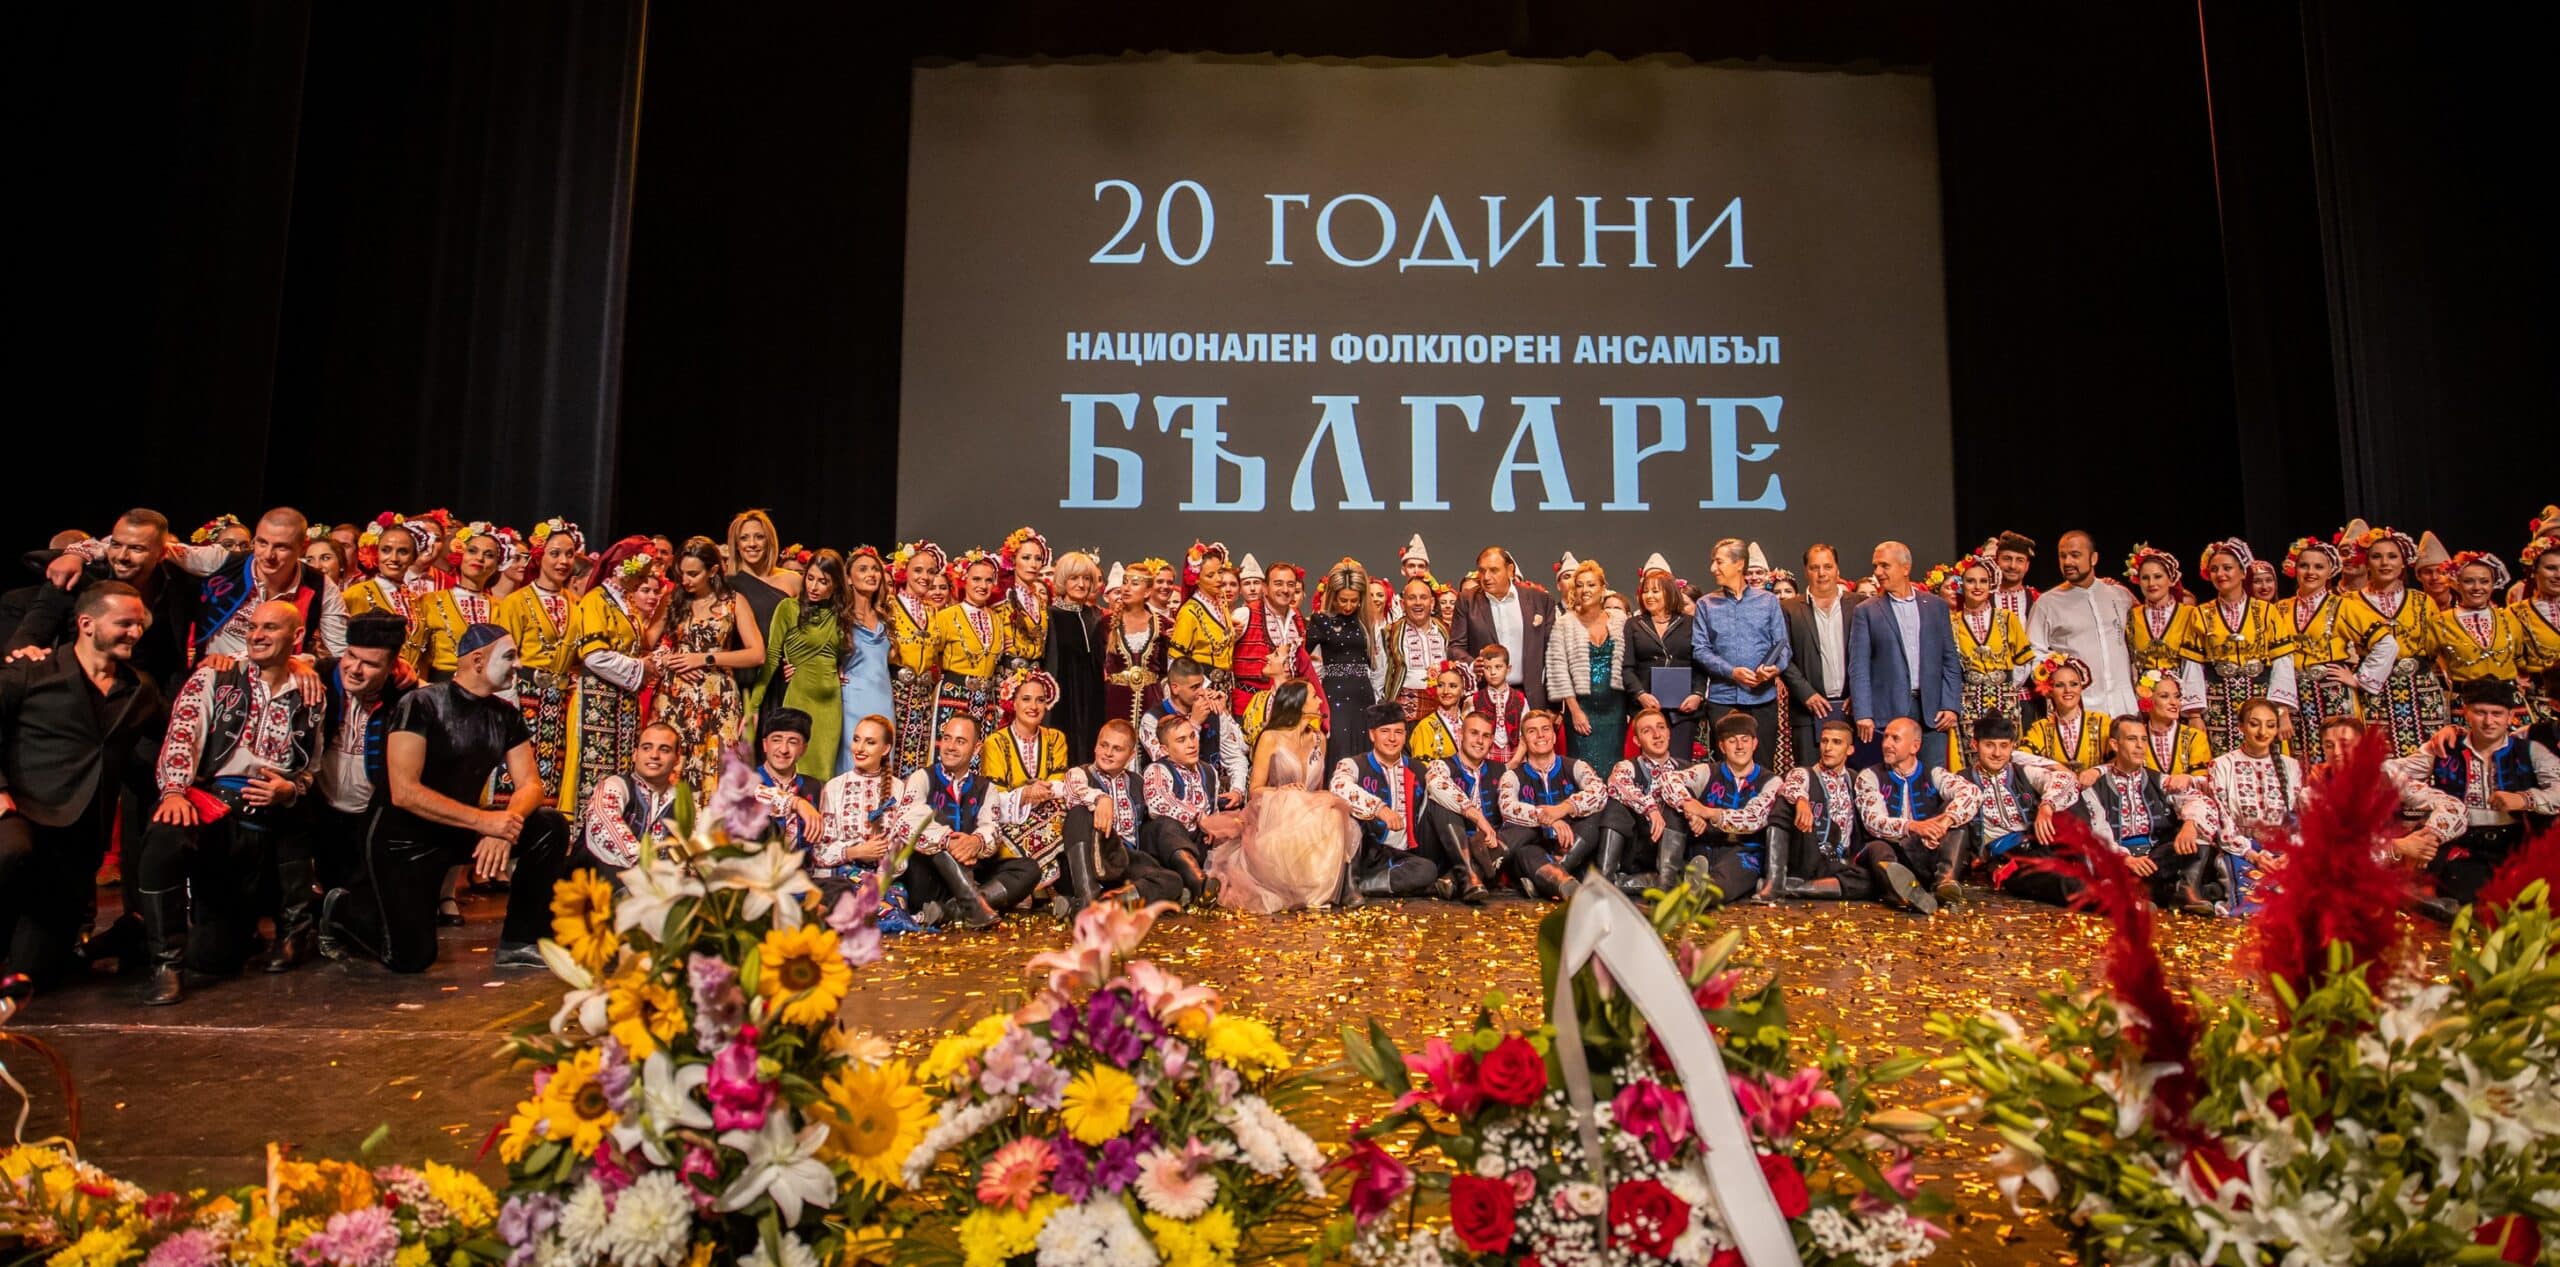 Най успешният спектакъл на Национален фолклорен ансамбъл Българе – Това е